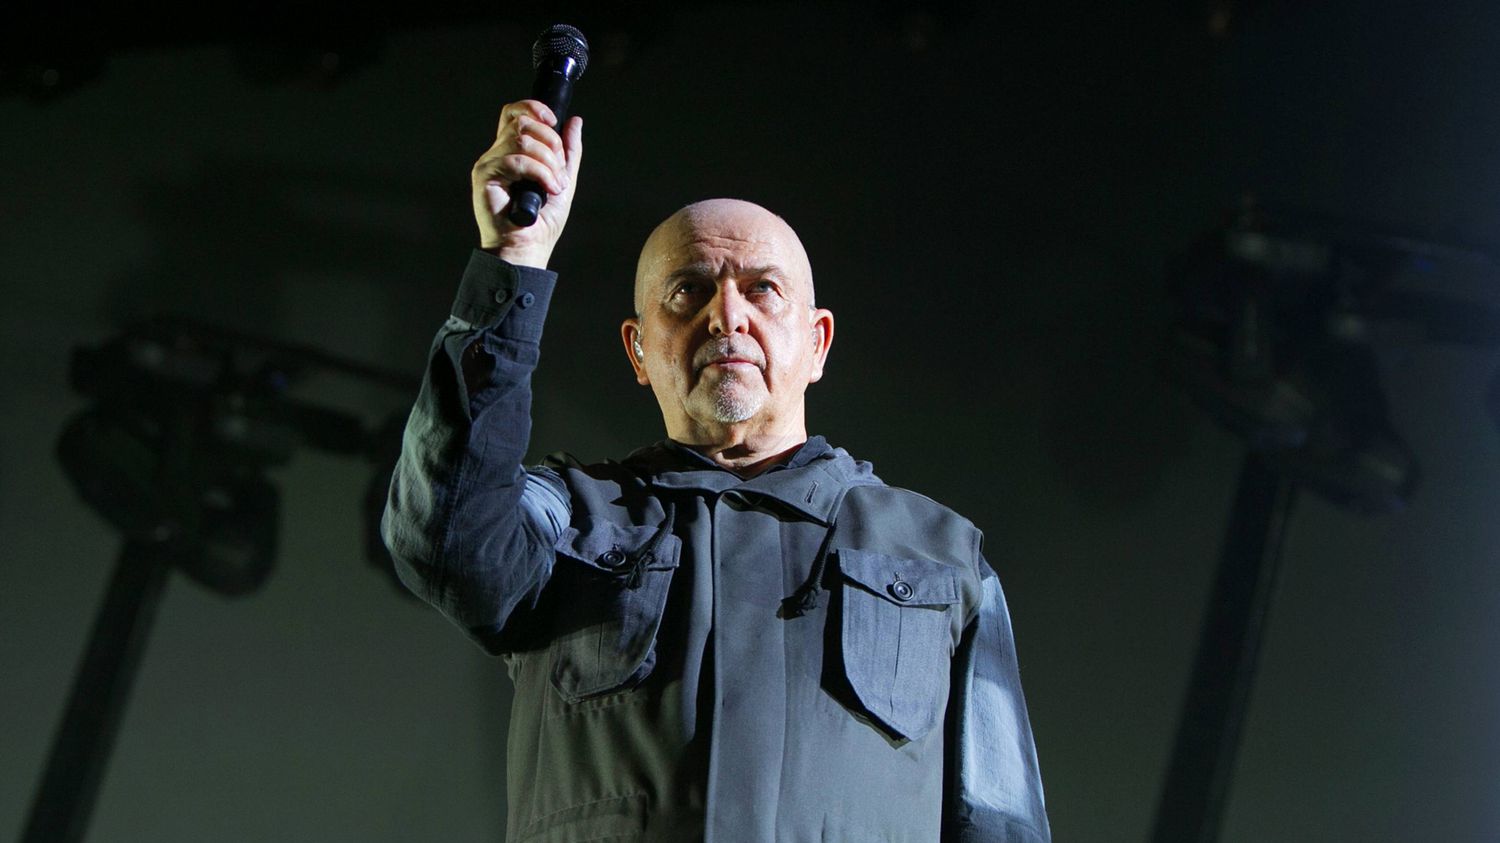 Peter Gabriel Announces 2023 European Tour The Rock Revival